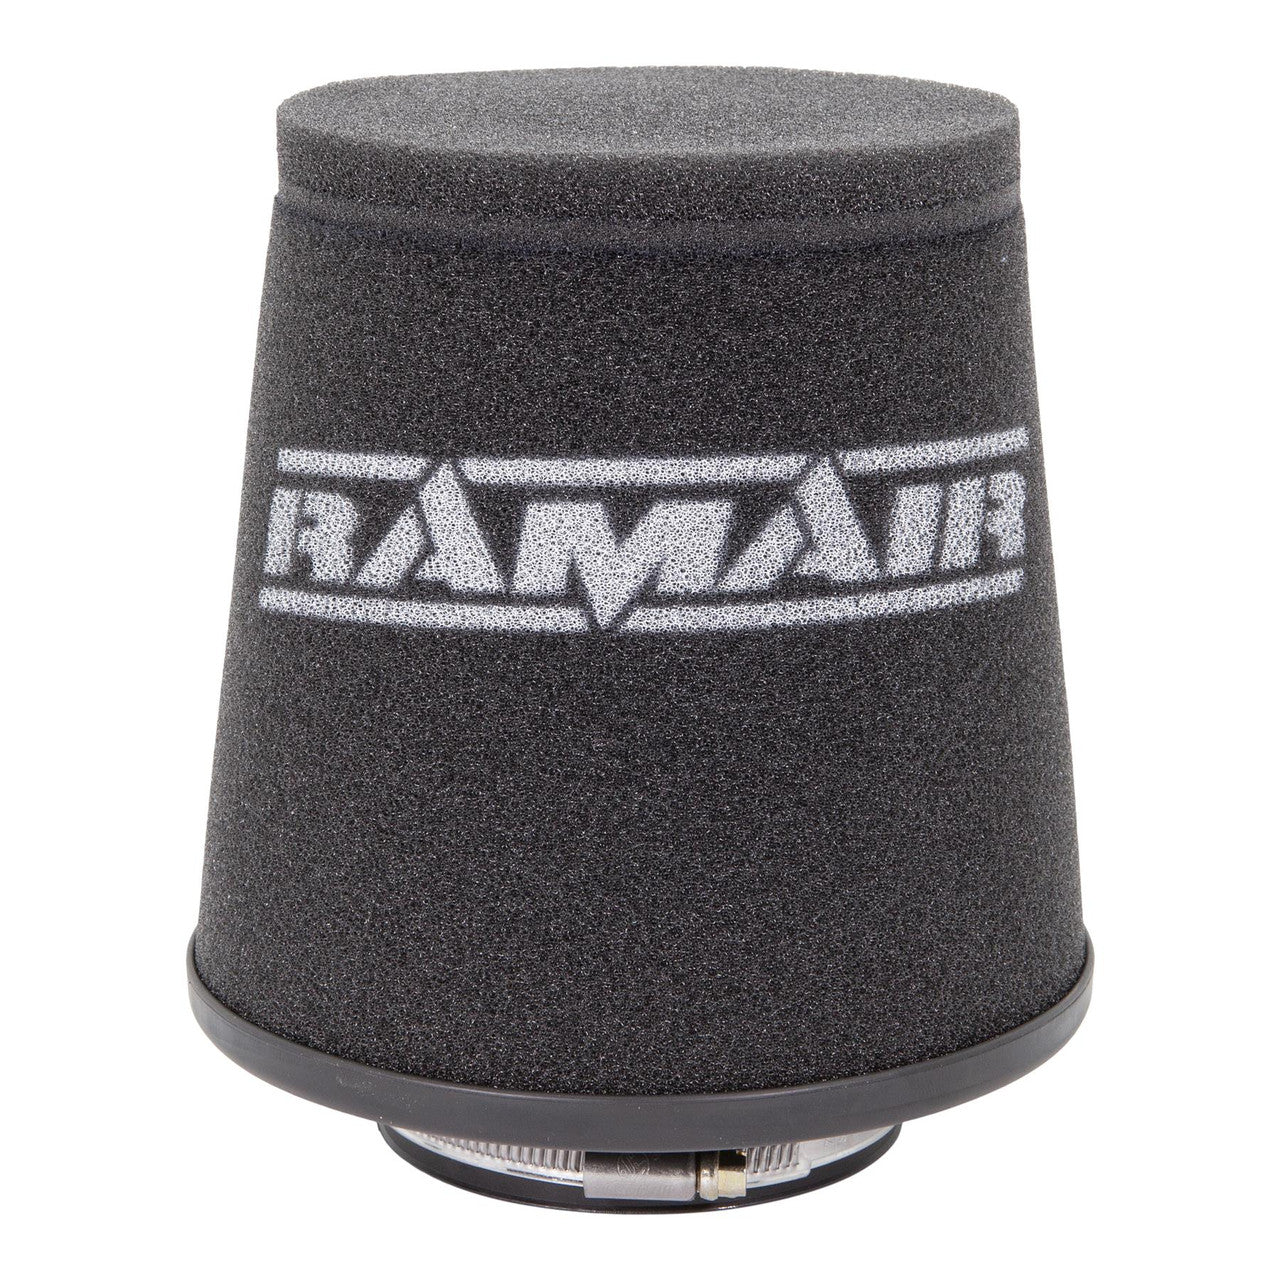 Ramair Universal Foam Air Filter - 60 to 90mm